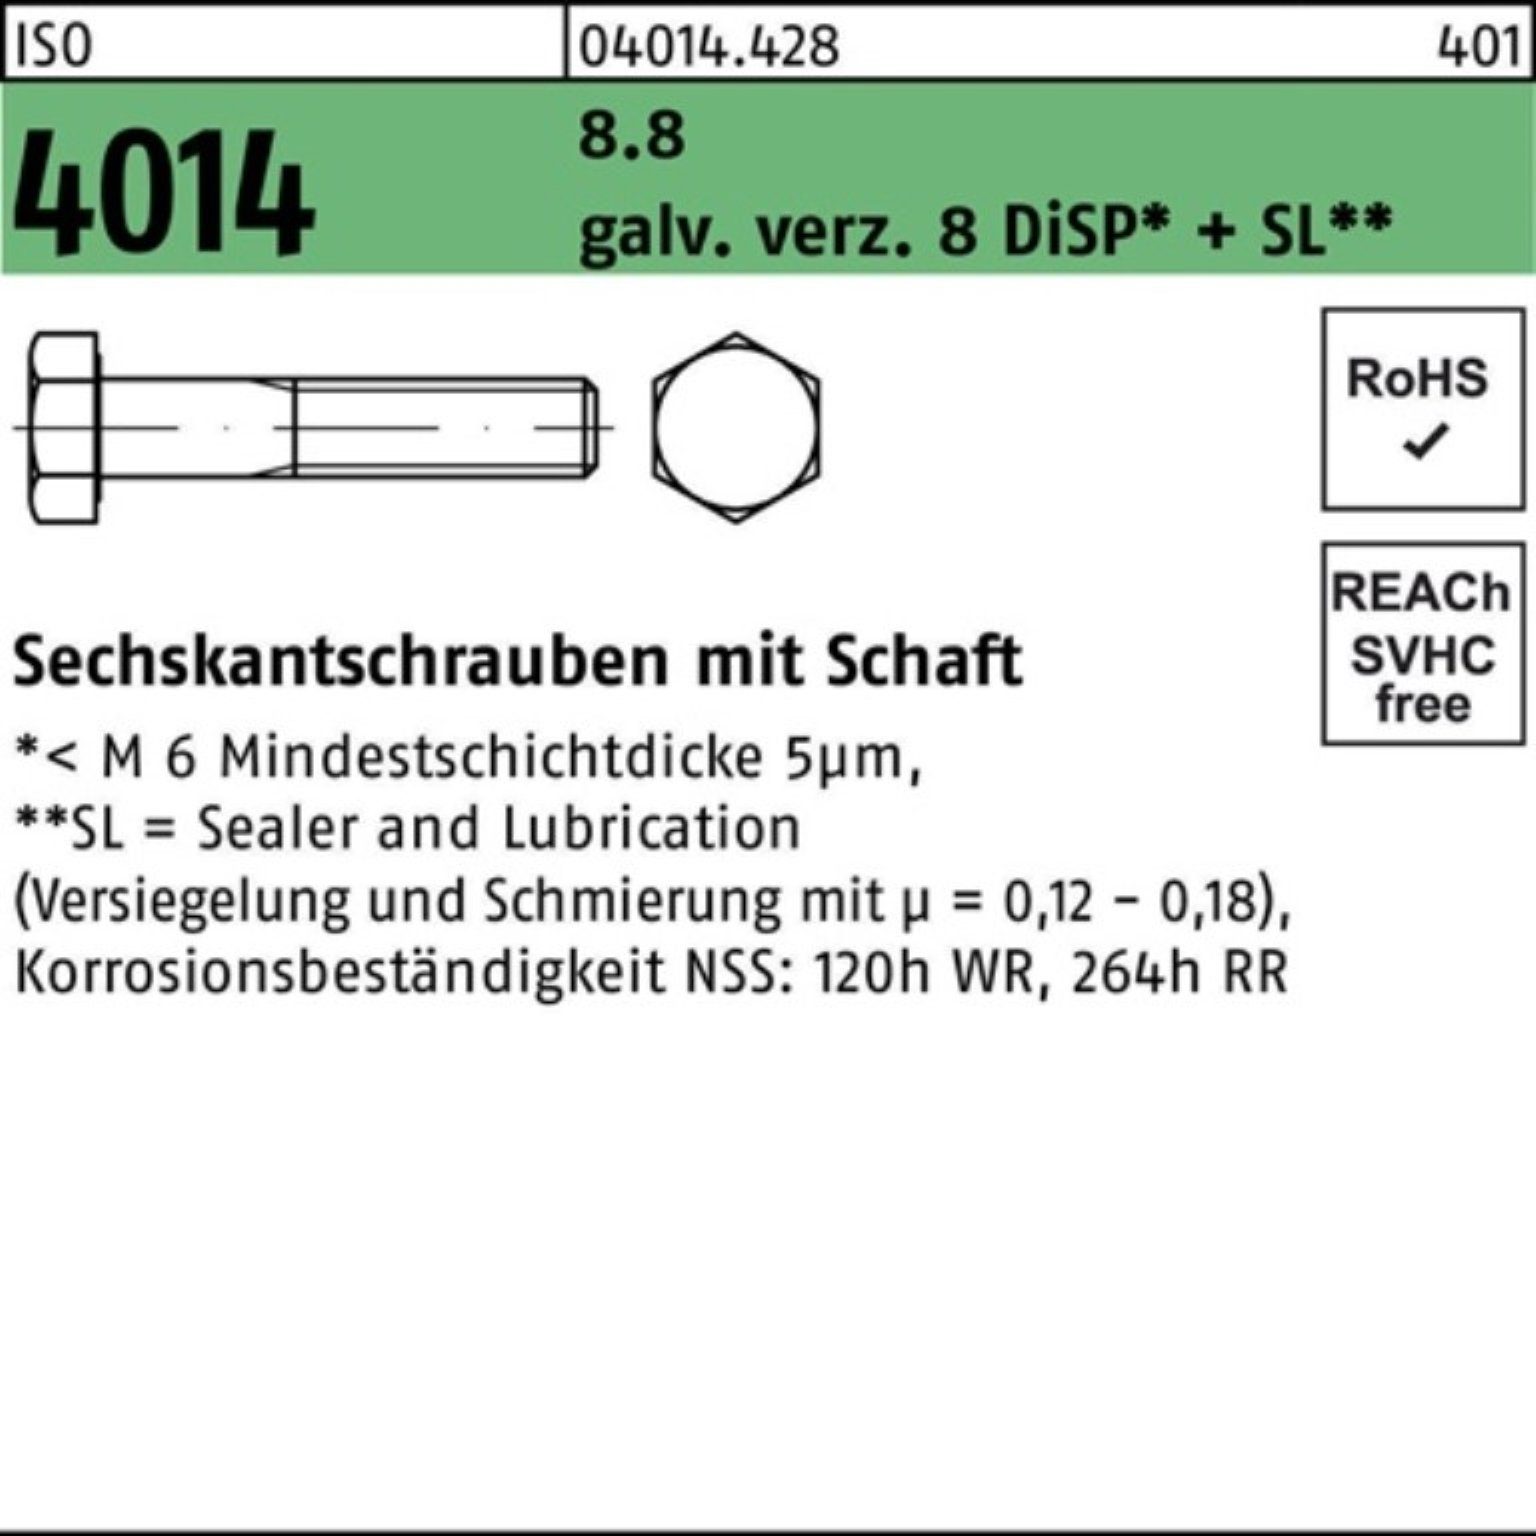 Bufab Sechskantschraube 100er Pack Sechskantschraube 8 4014 Schaft galv.verz. 8.8 M12x130 ISO